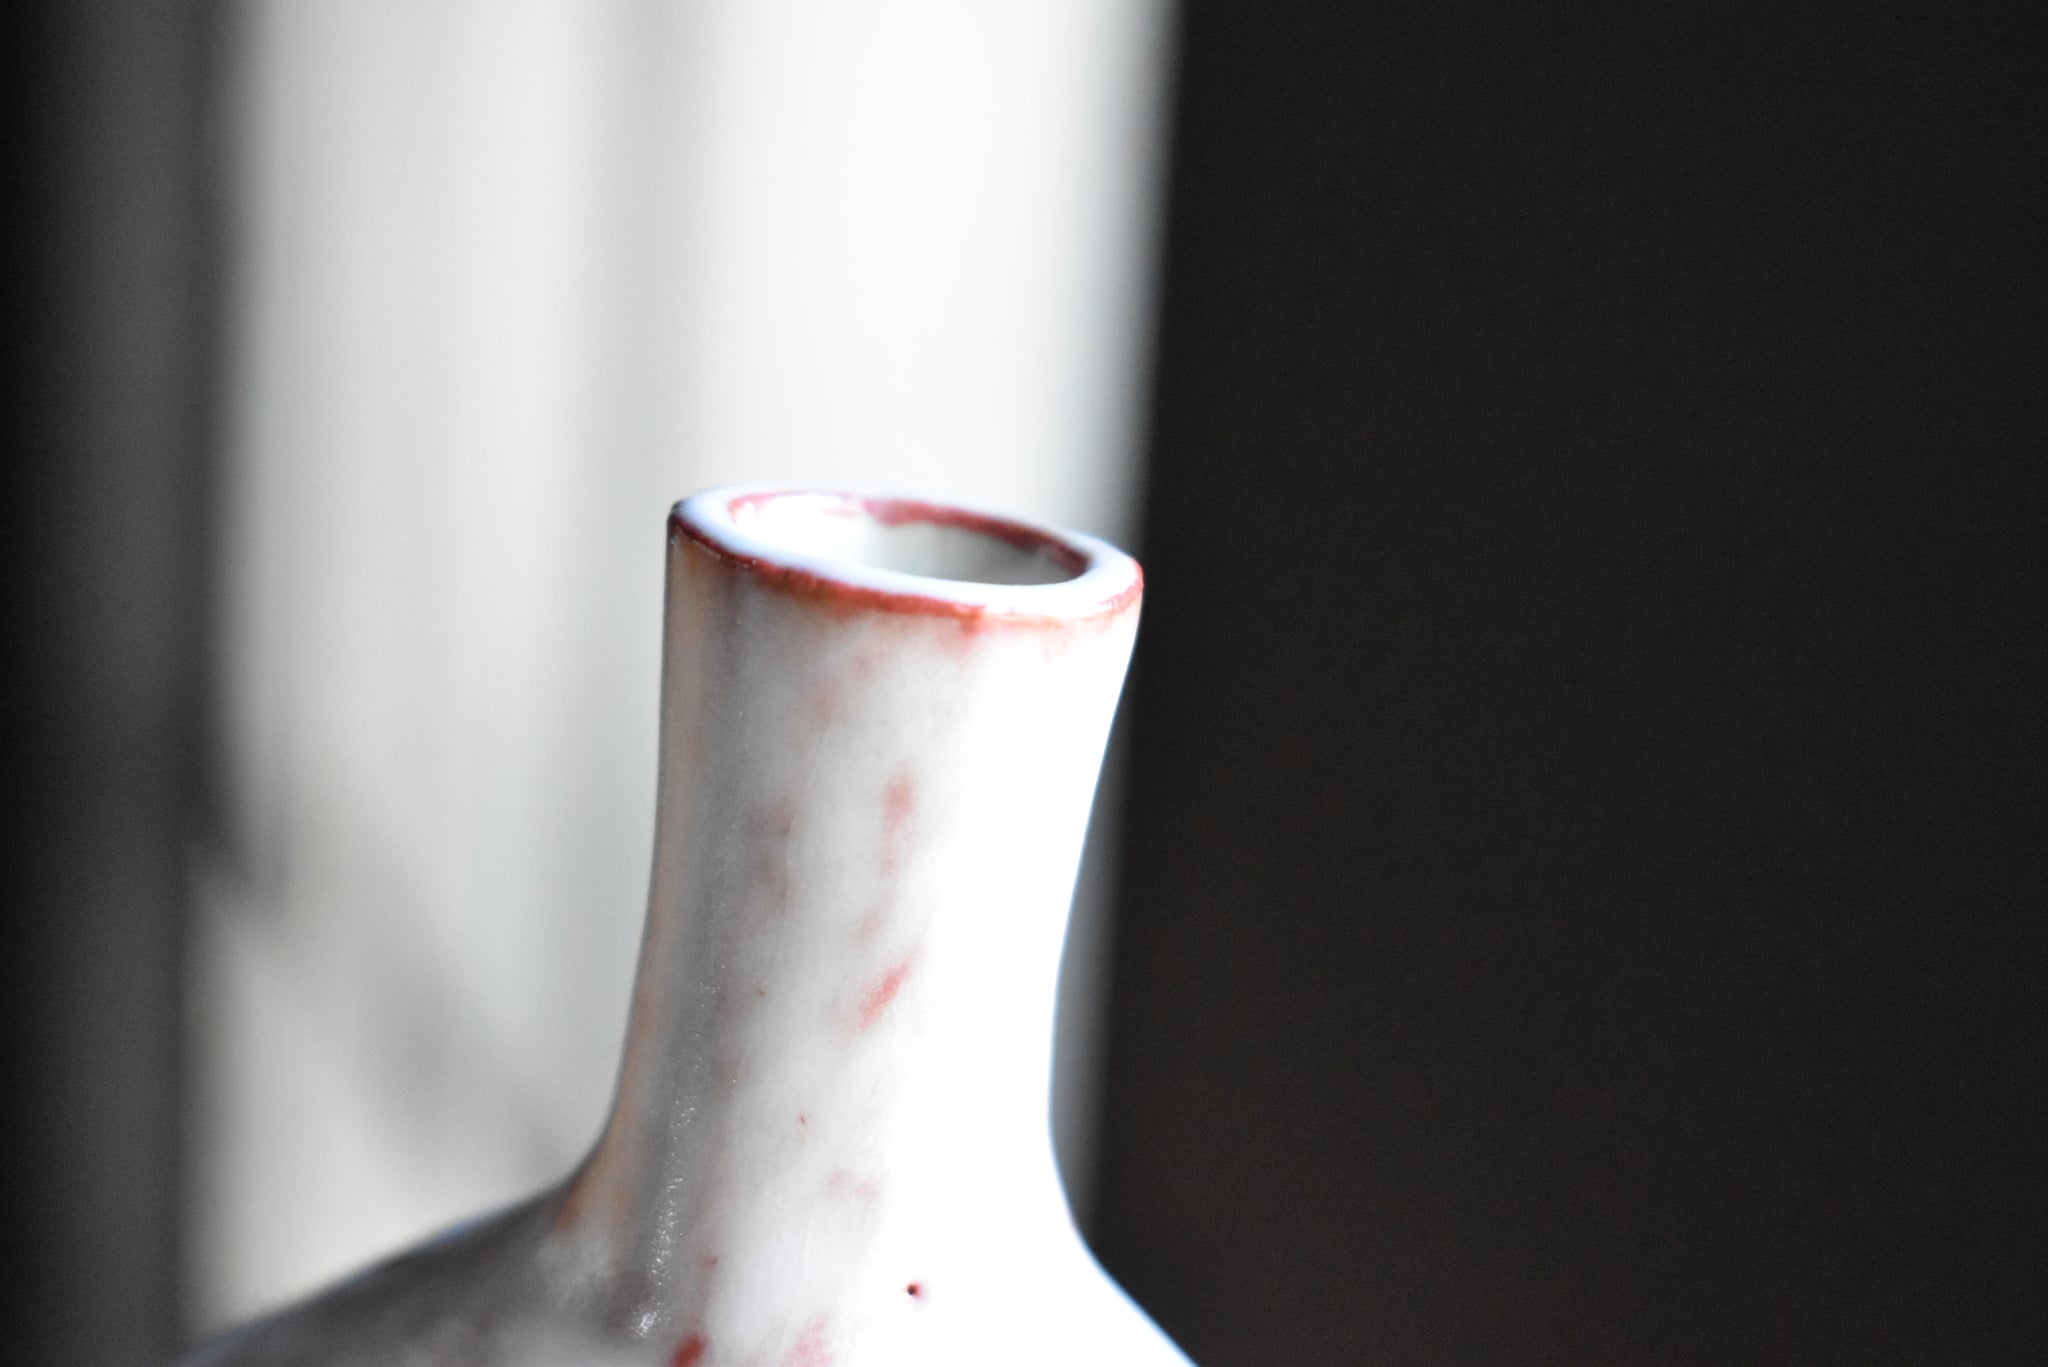 Shiny Pastel Rouge Vase